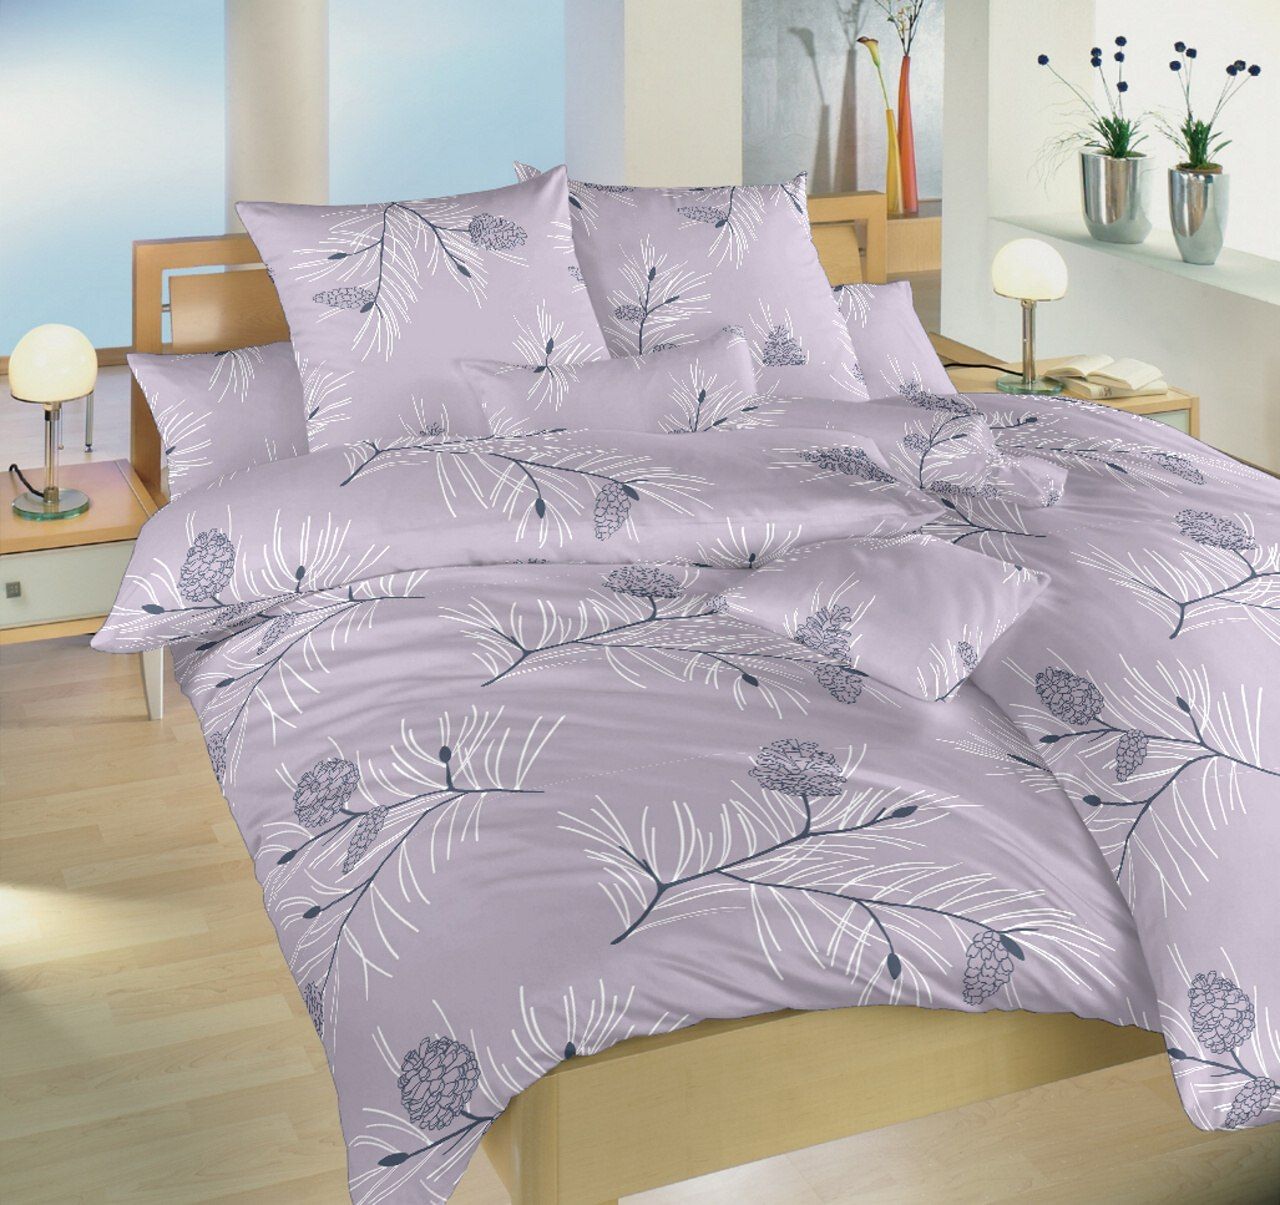 Dadka Povlečení bavlna Jehličí violet 220x200, 2x70x90 cm